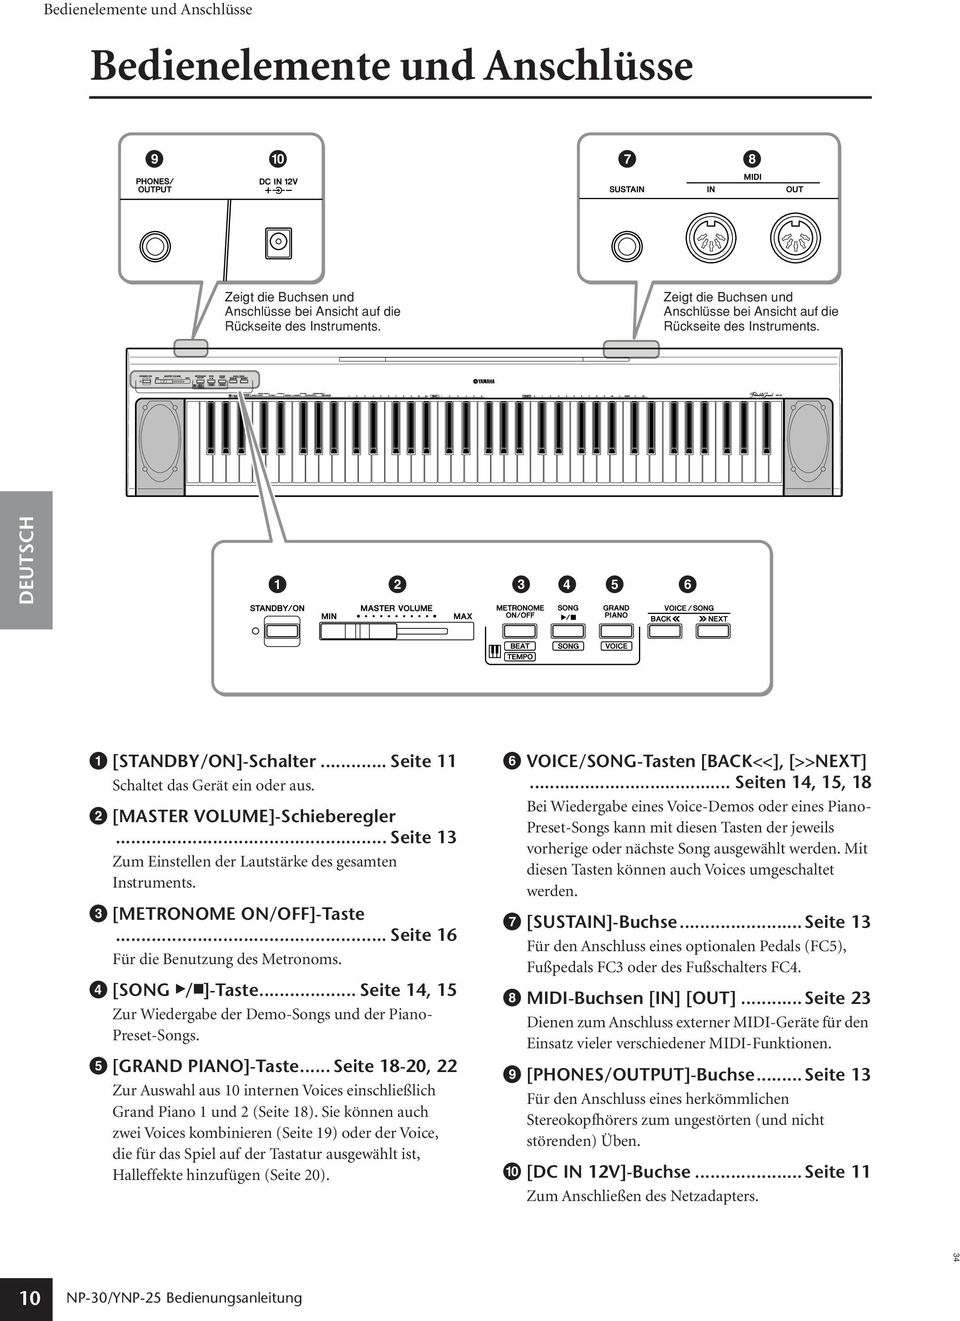 .. Seite 13 Zum Einstellen der Lautstärke des gesamten Instruments. 3 [METRONOME ON/OFF]-Taste... Seite 16 Für die Benutzung des Metronoms. 4 [SONG W/A]-Taste.